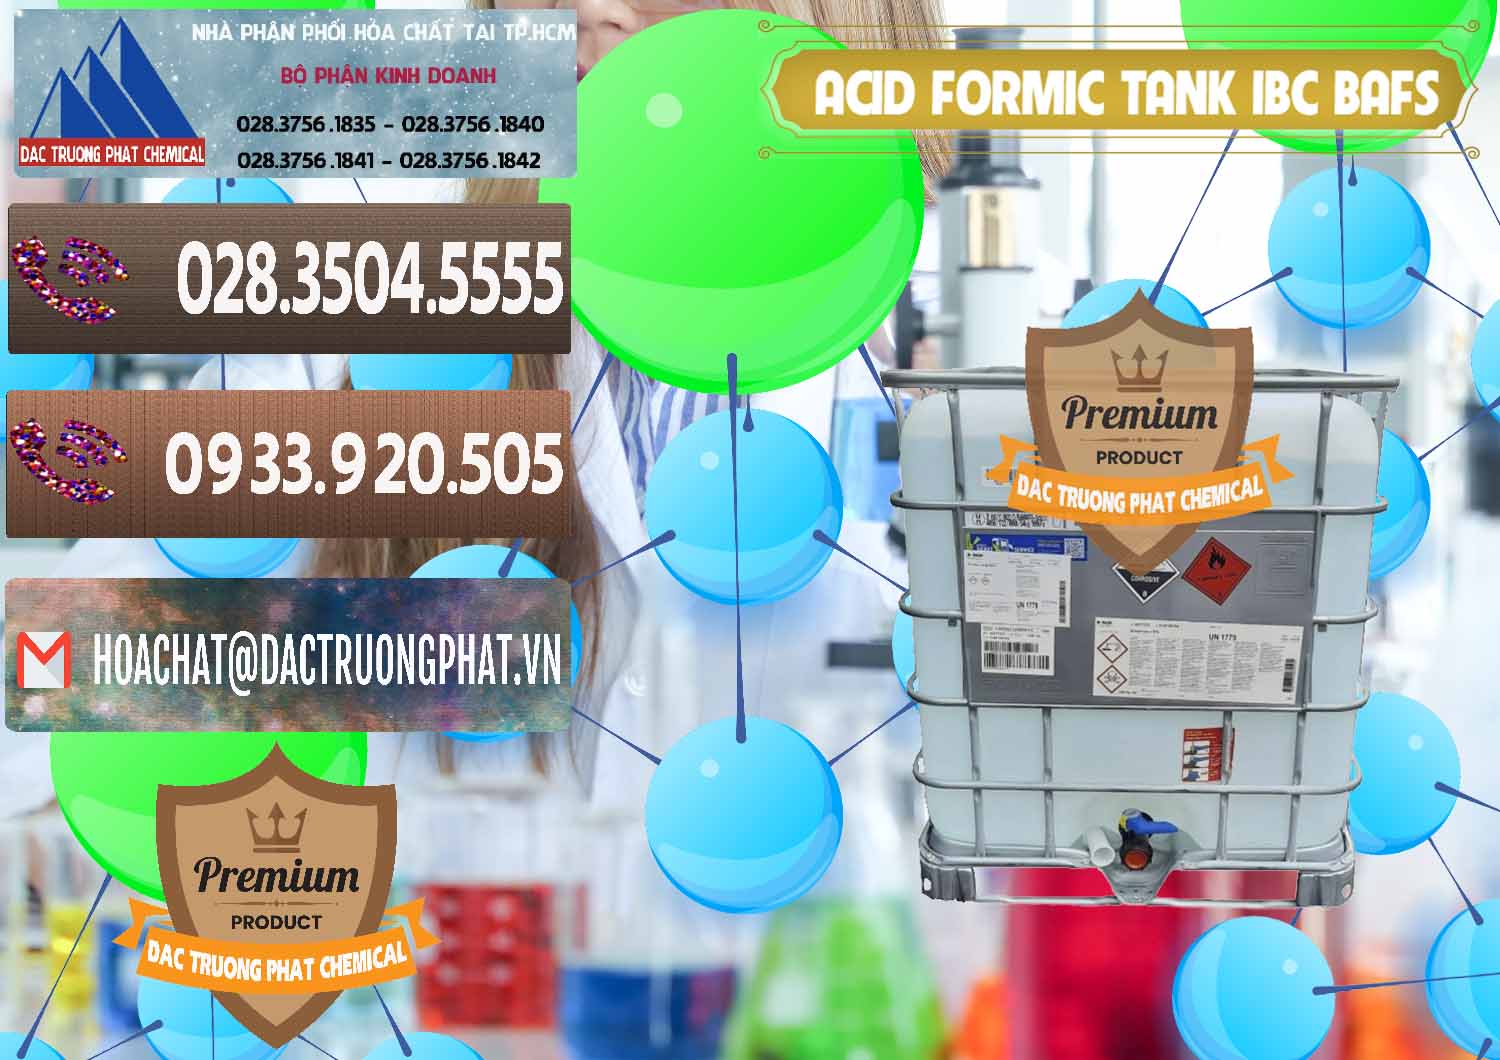 Bán _ phân phối Acid Formic - Axit Formic Tank - Bồn IBC BASF Đức - 0366 - Đơn vị kinh doanh & phân phối hóa chất tại TP.HCM - hoachatviet.net